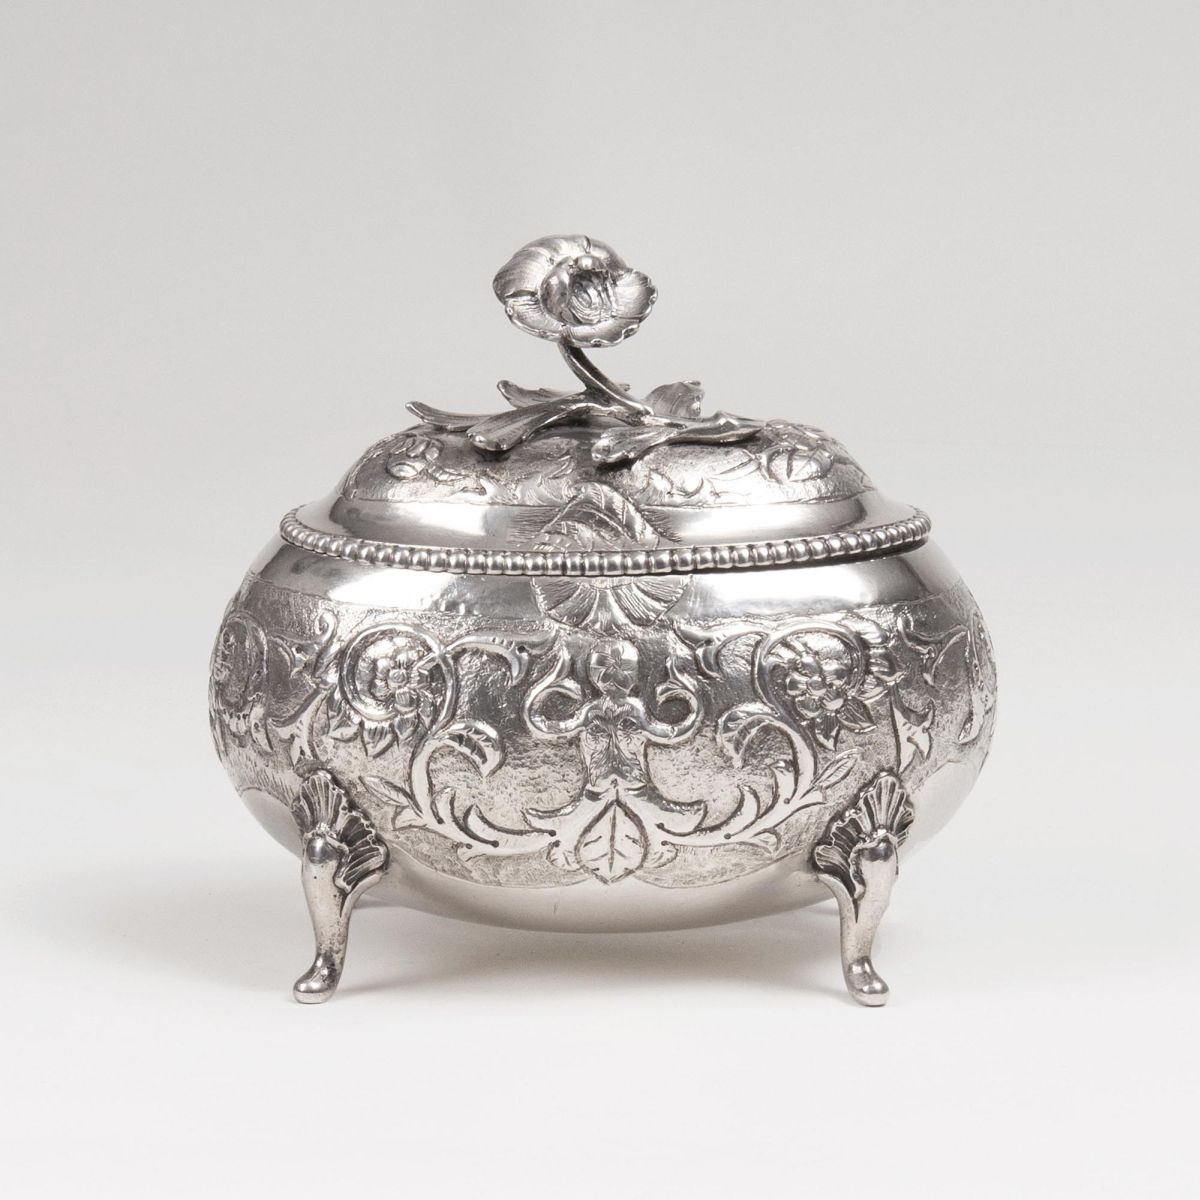 A Rococo Sugar Bowl with floral knob